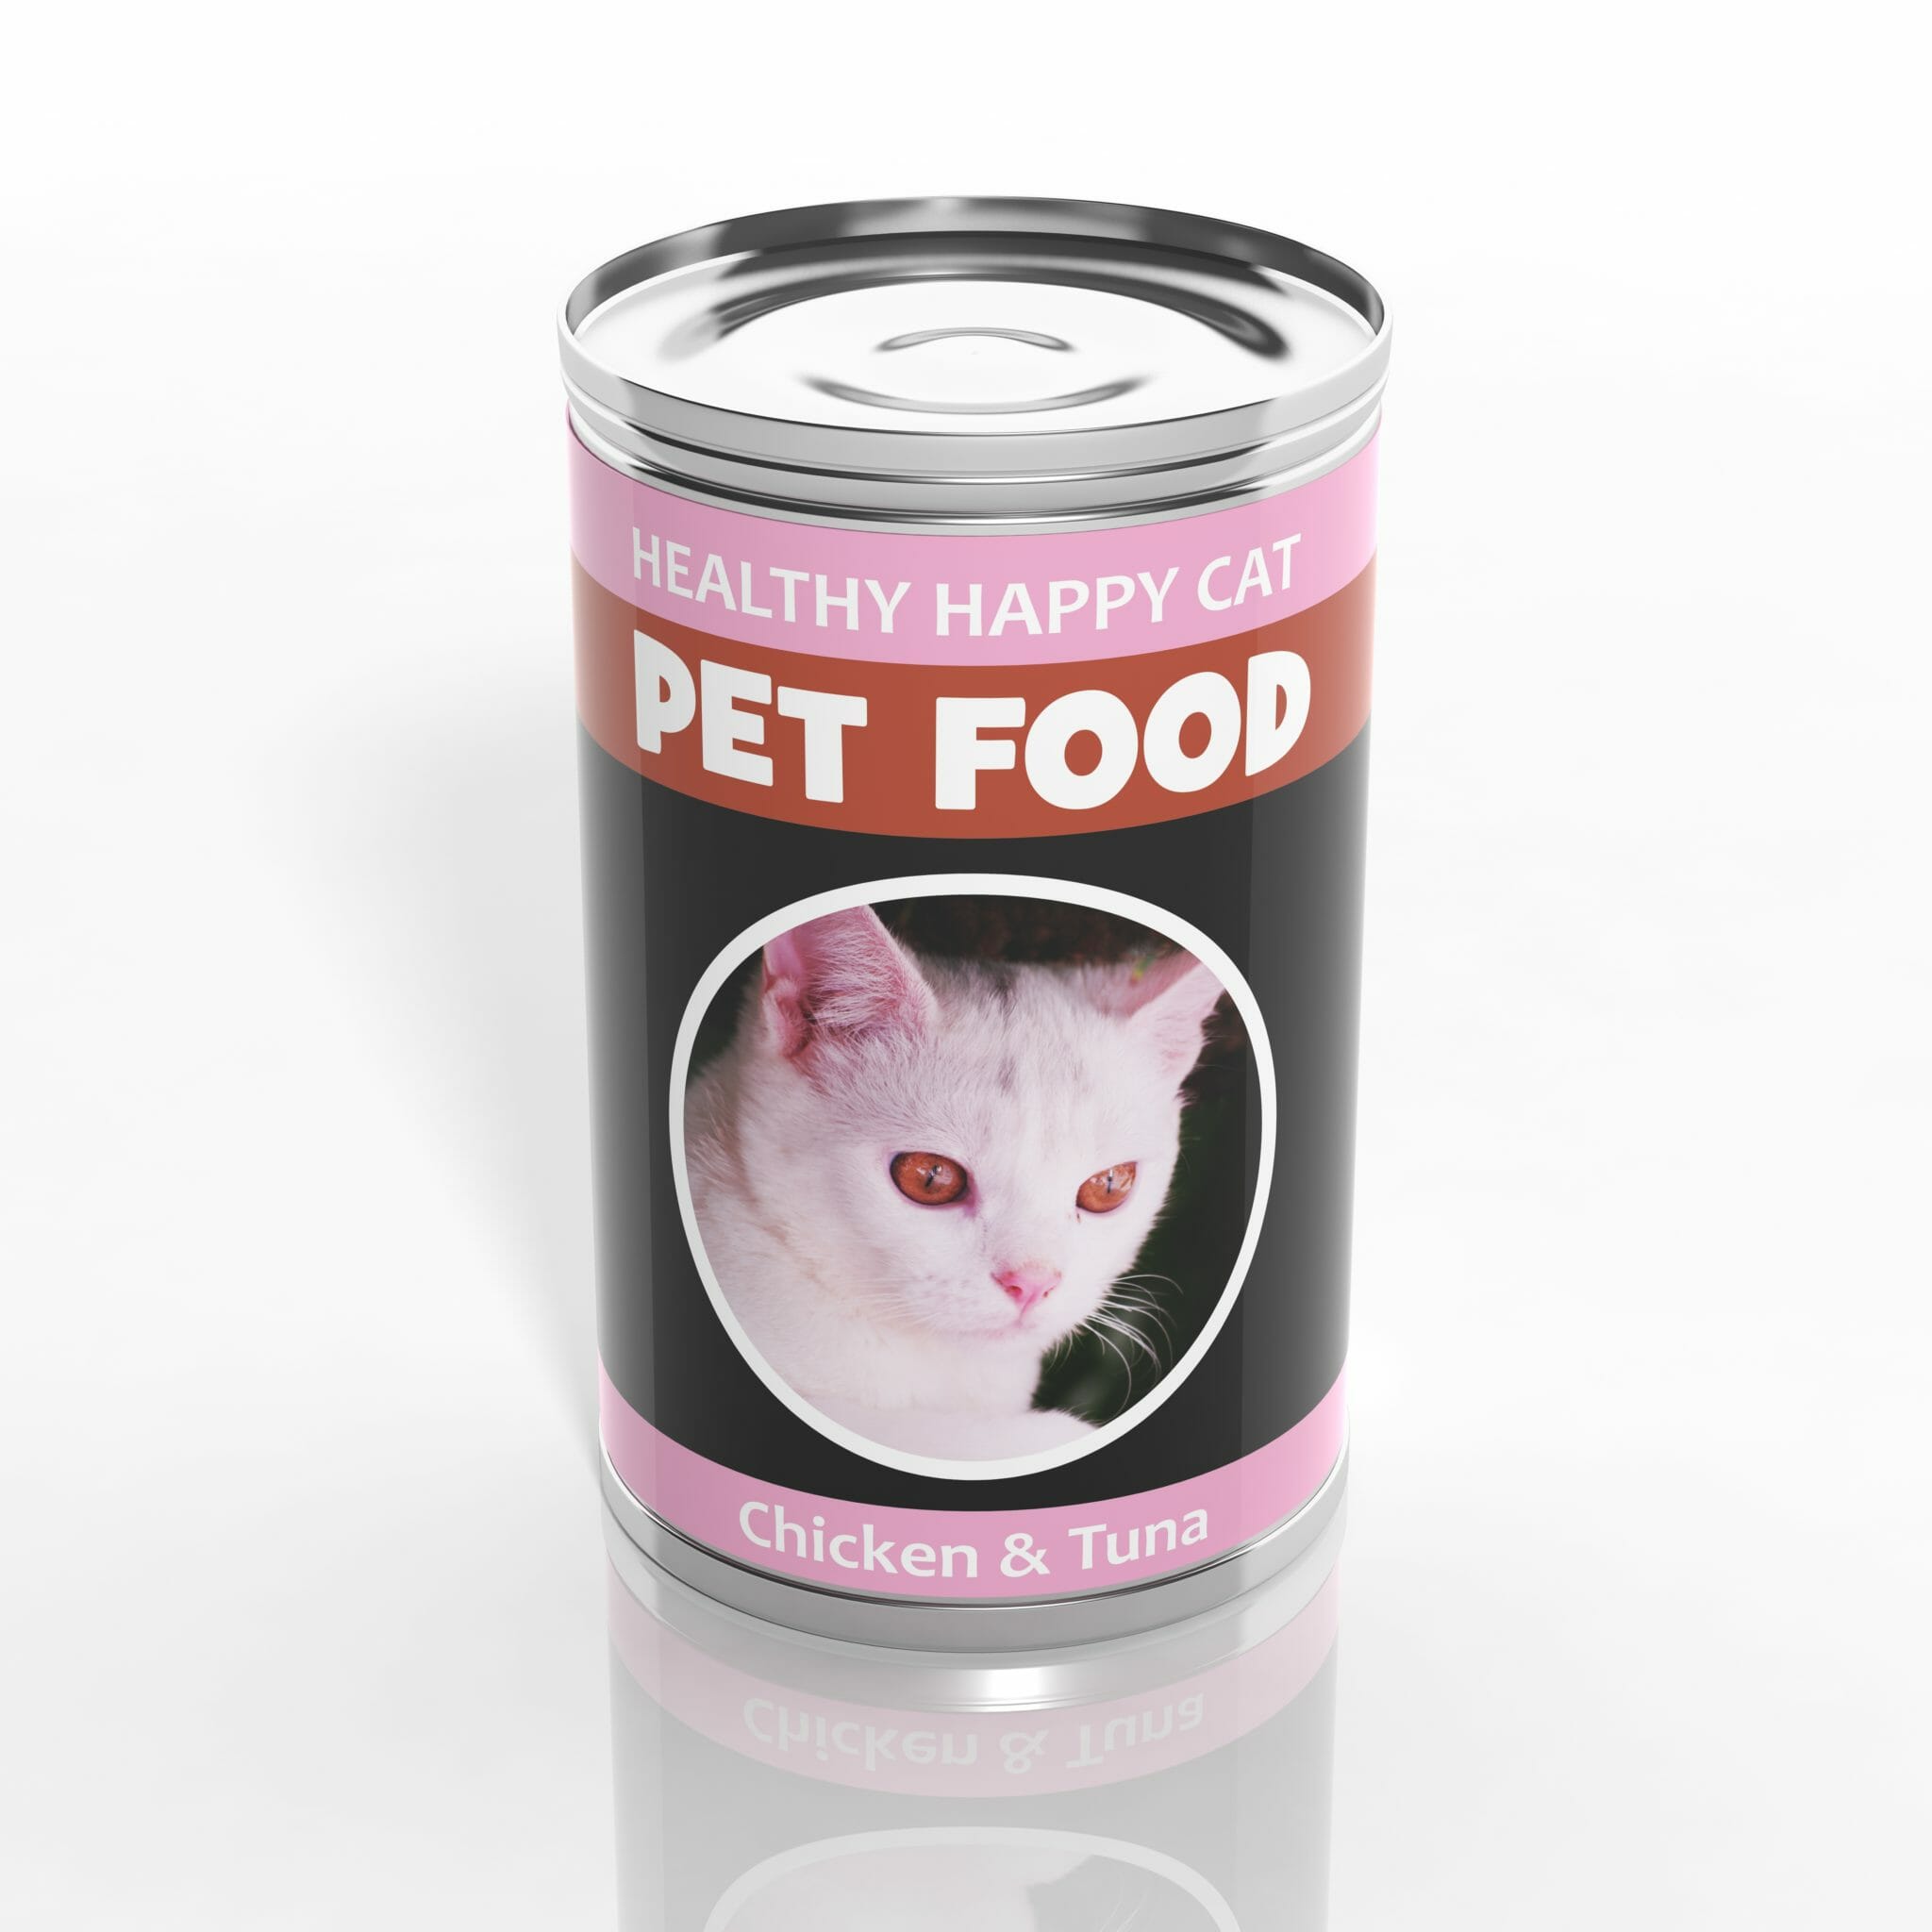 Pet food can